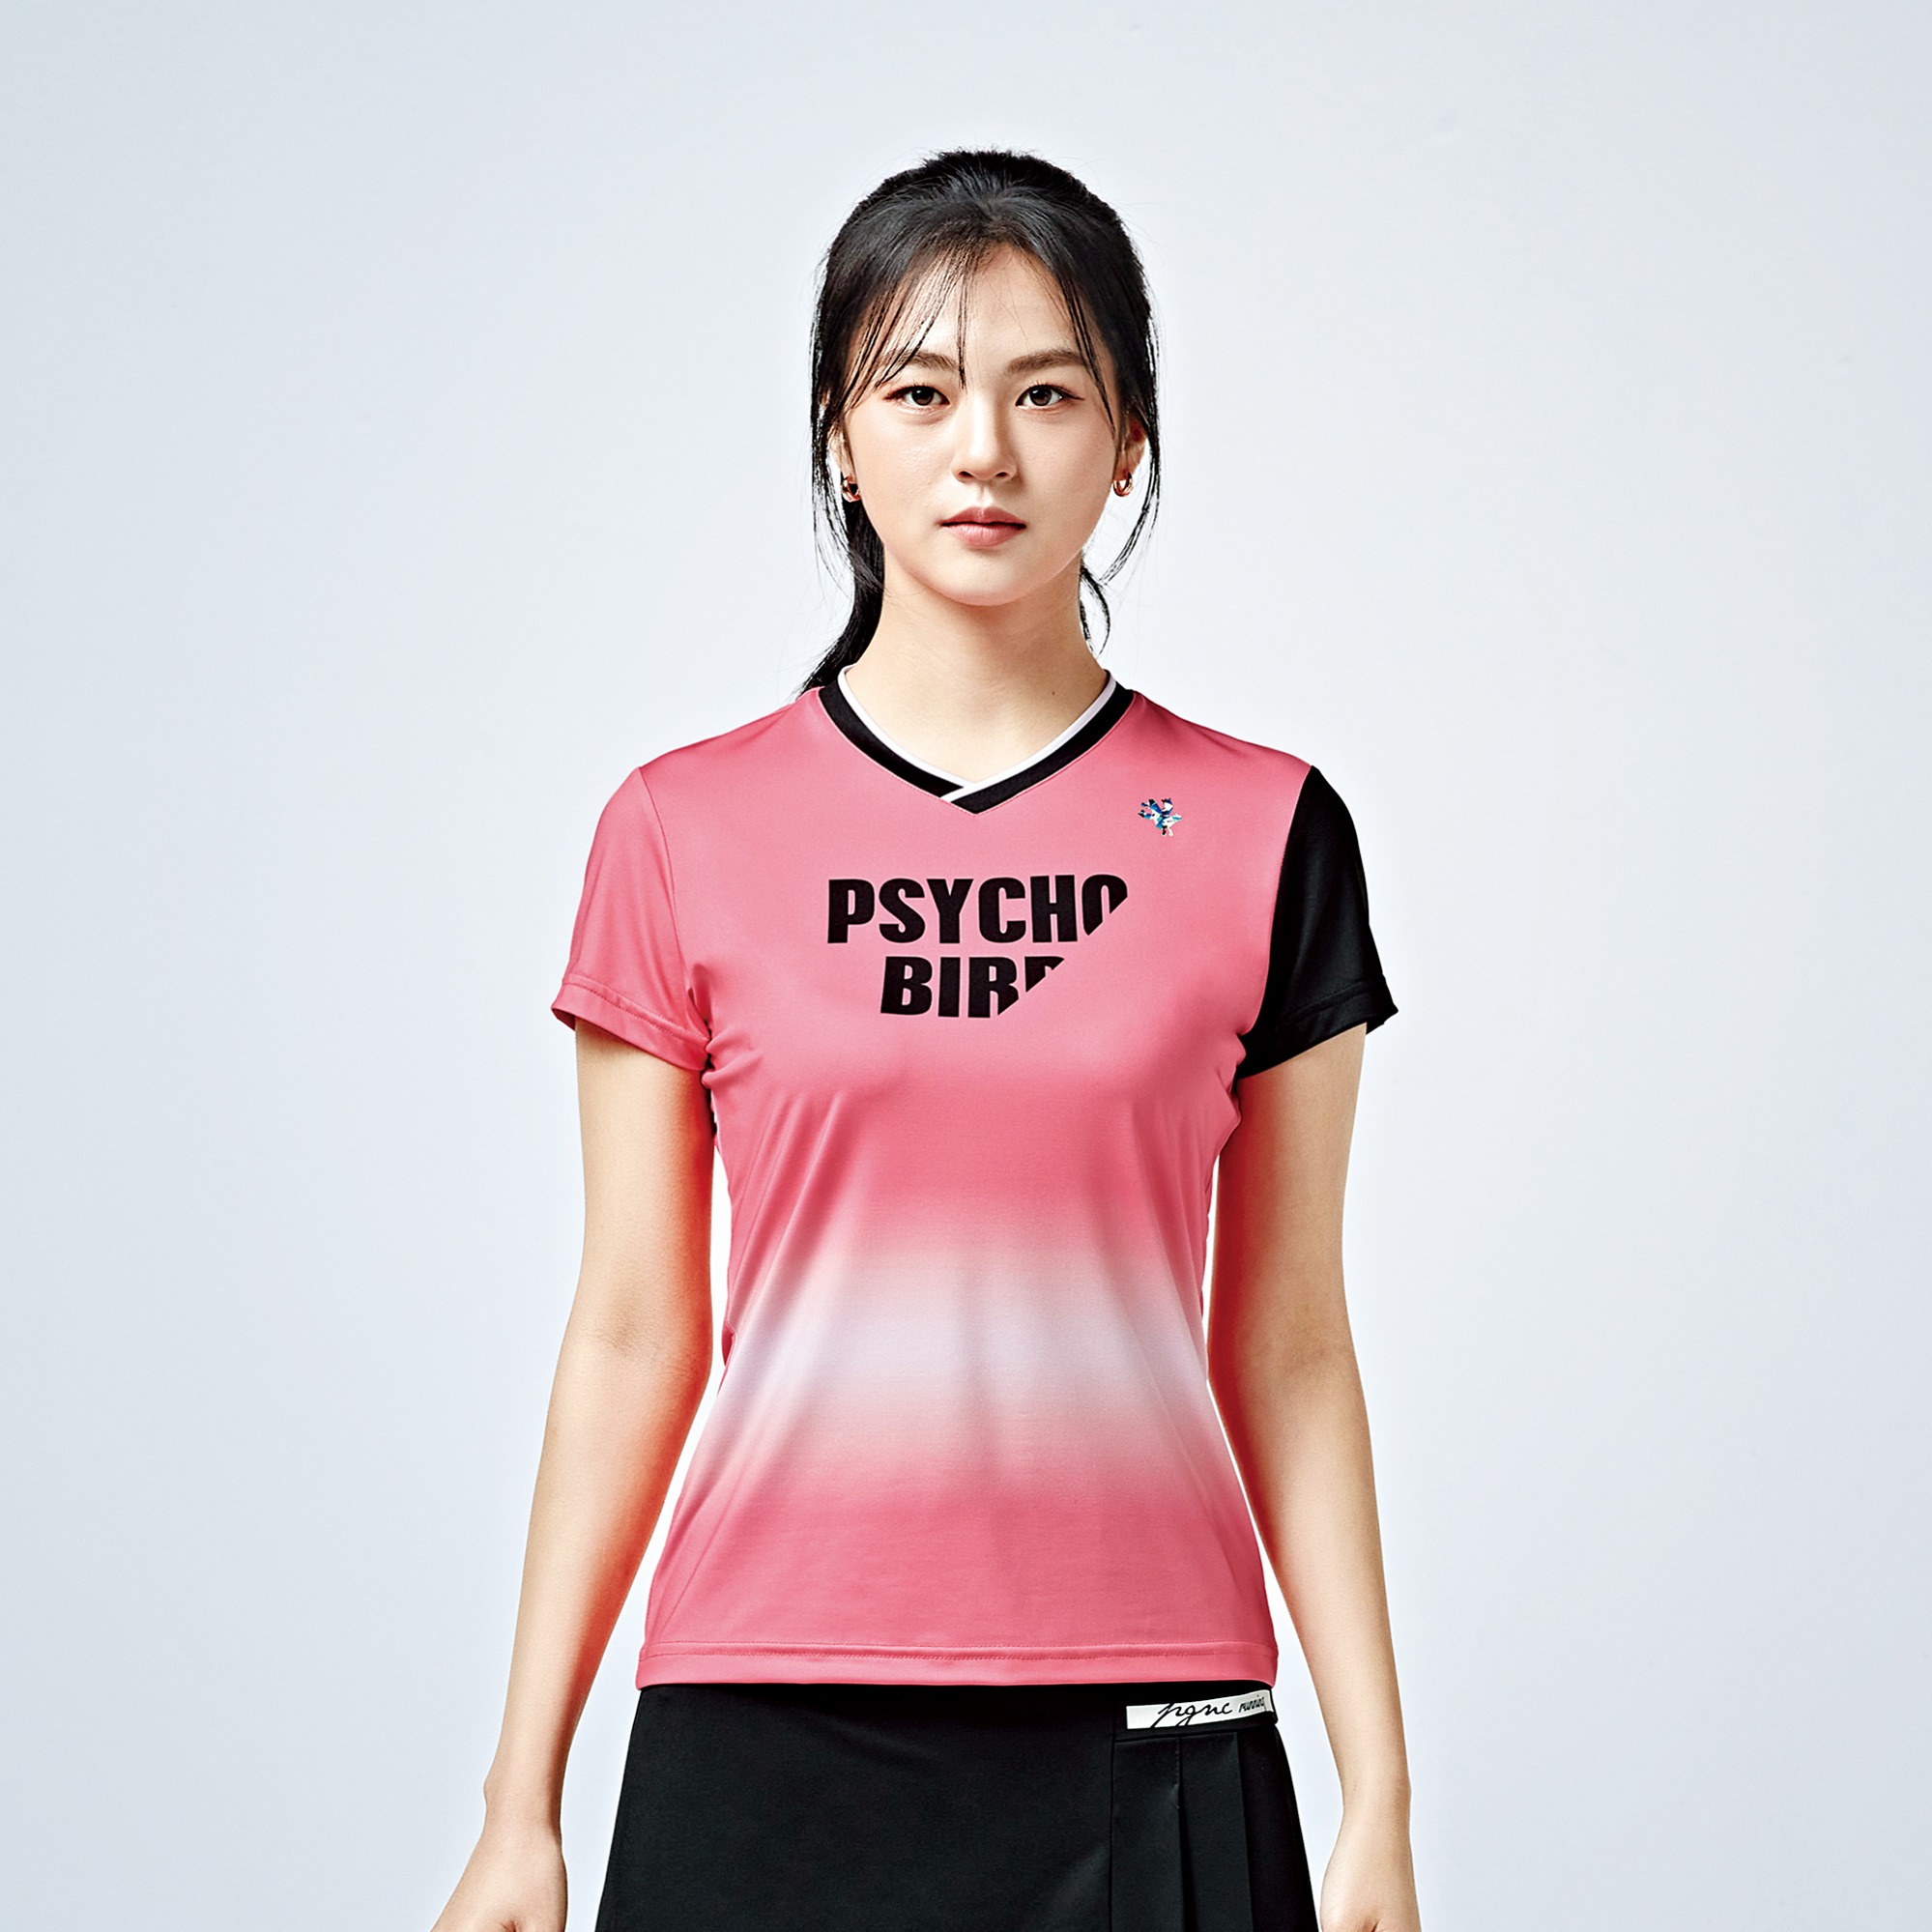 여성 싸이코버드 티셔츠 PSY-6006